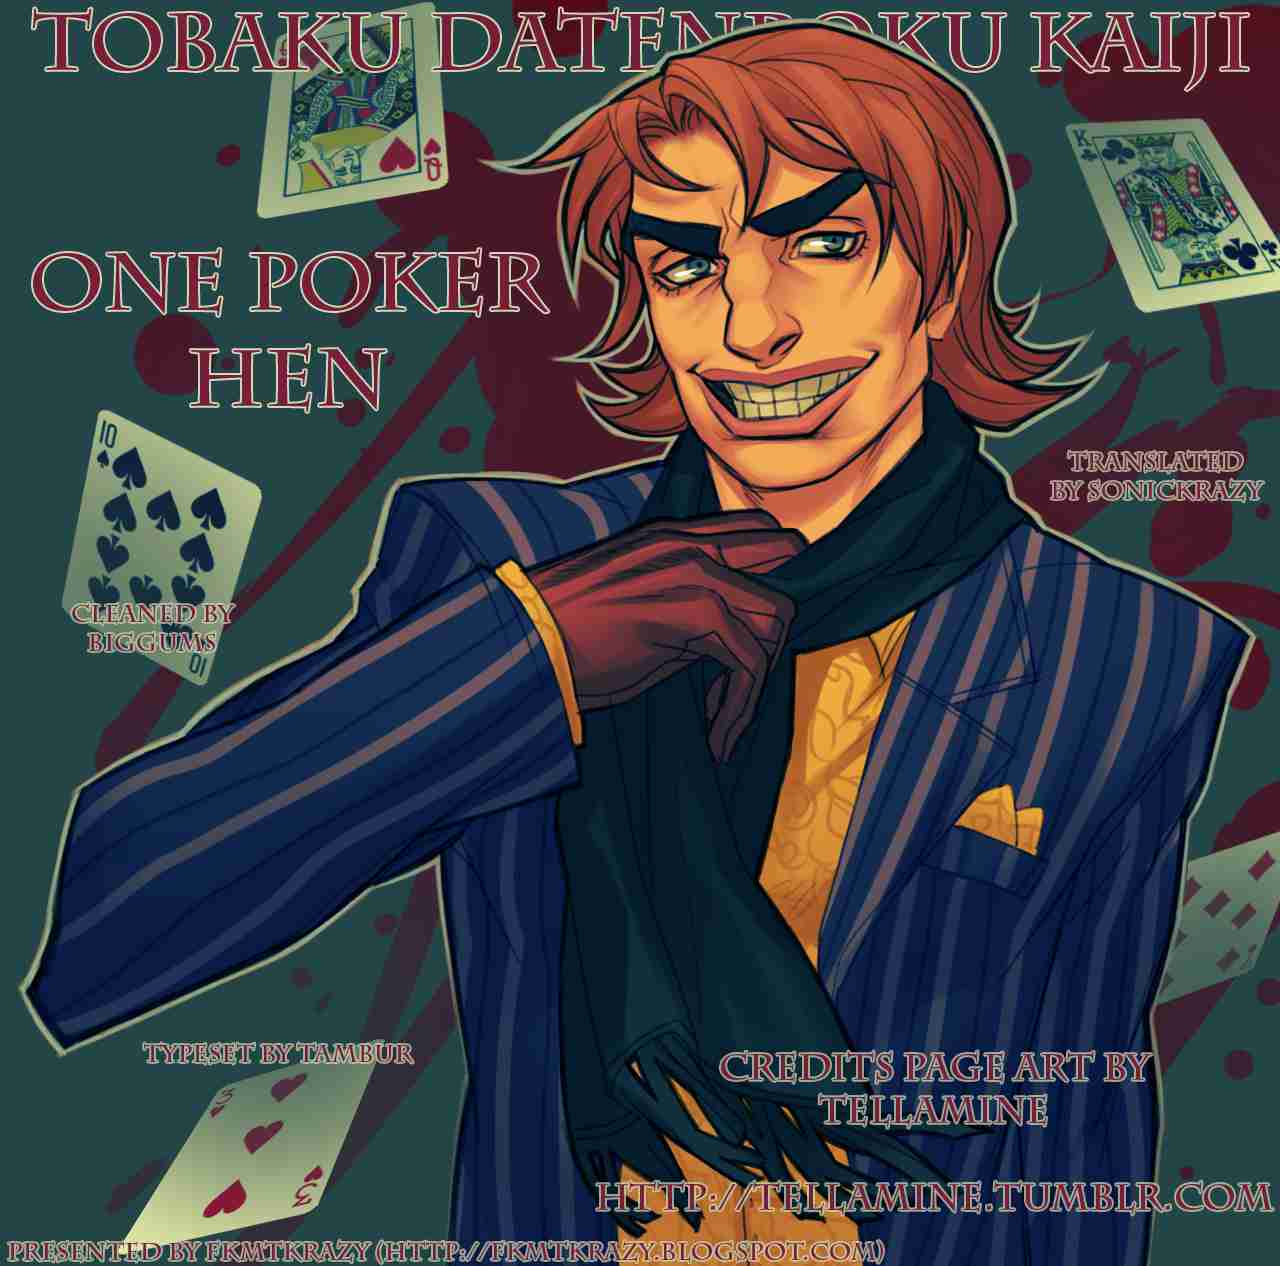 Tobaku Datenroku Kaiji: One Poker Hen Vol. 15 Ch. 244 Establishment